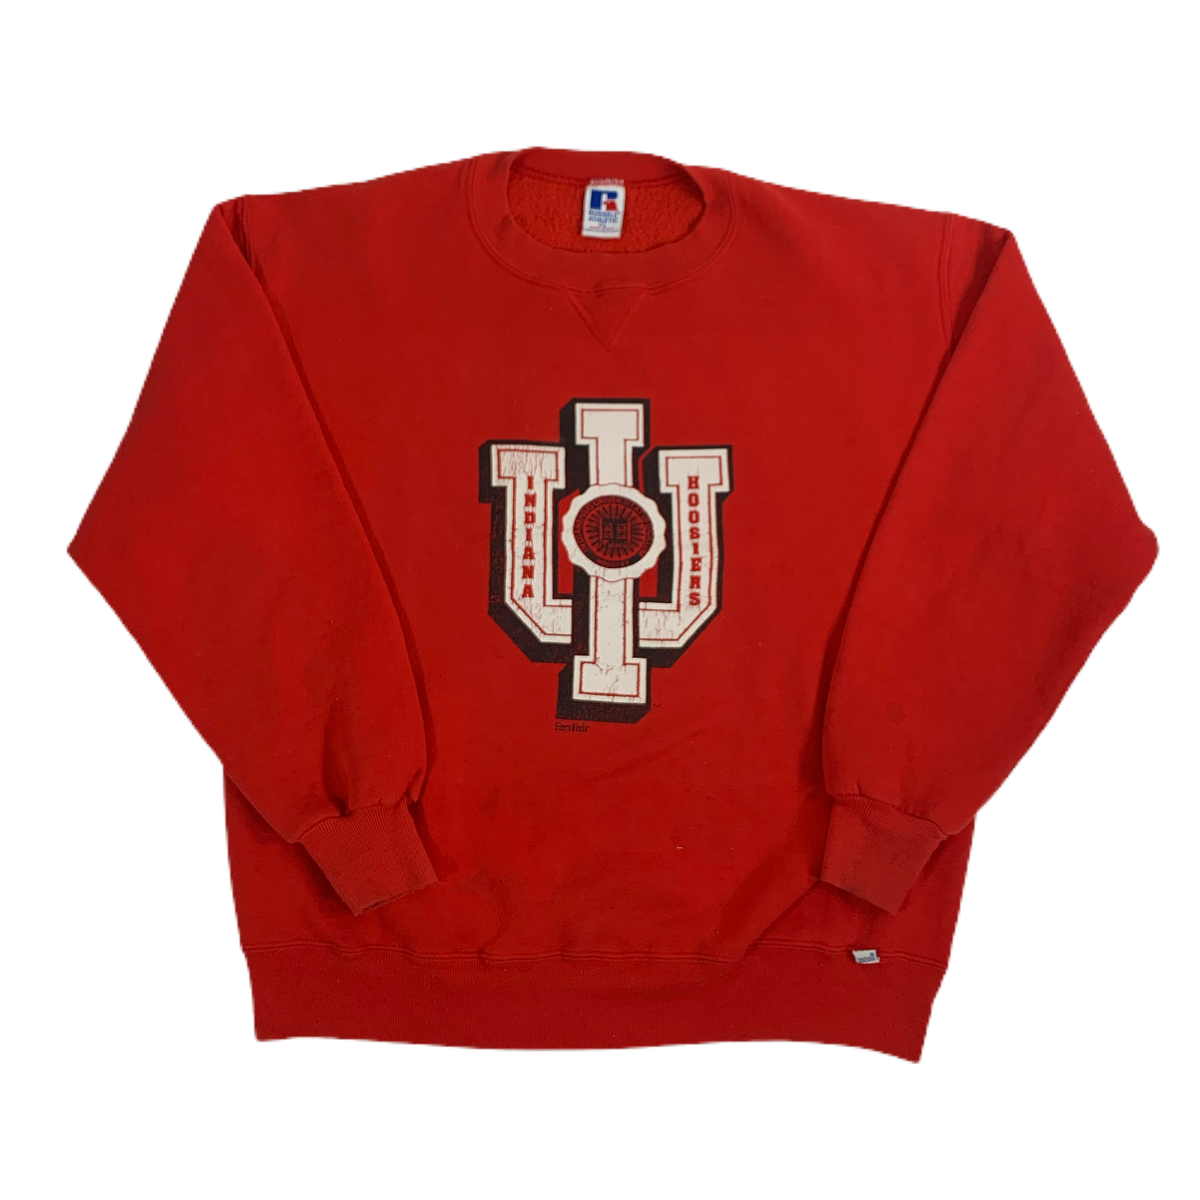 Vintage Russell Athletic “Indiana Hoosiers” Crewneck Sweatshirt - jointcustodydc